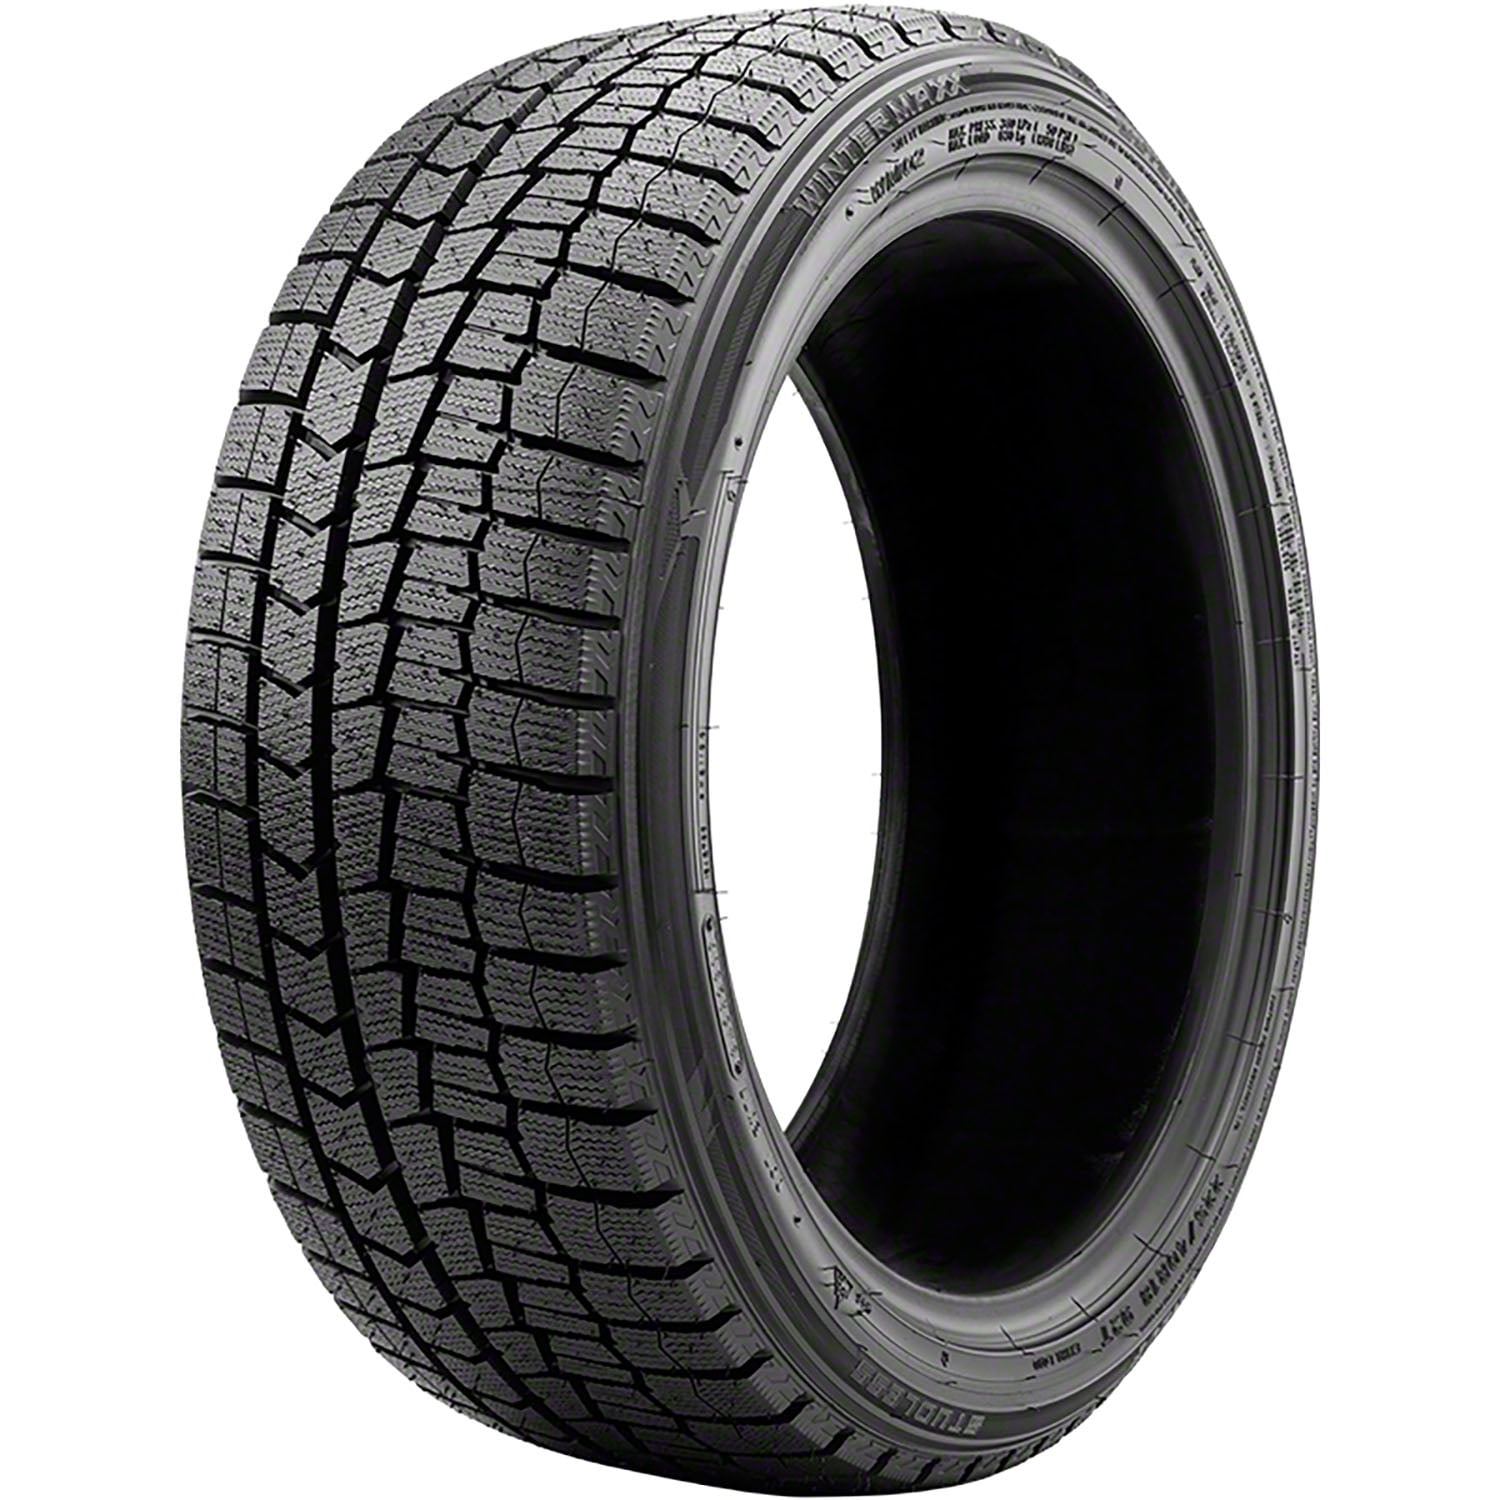 Tire Dunlop Winter 2 Maxx 215/55R16 97T Winter